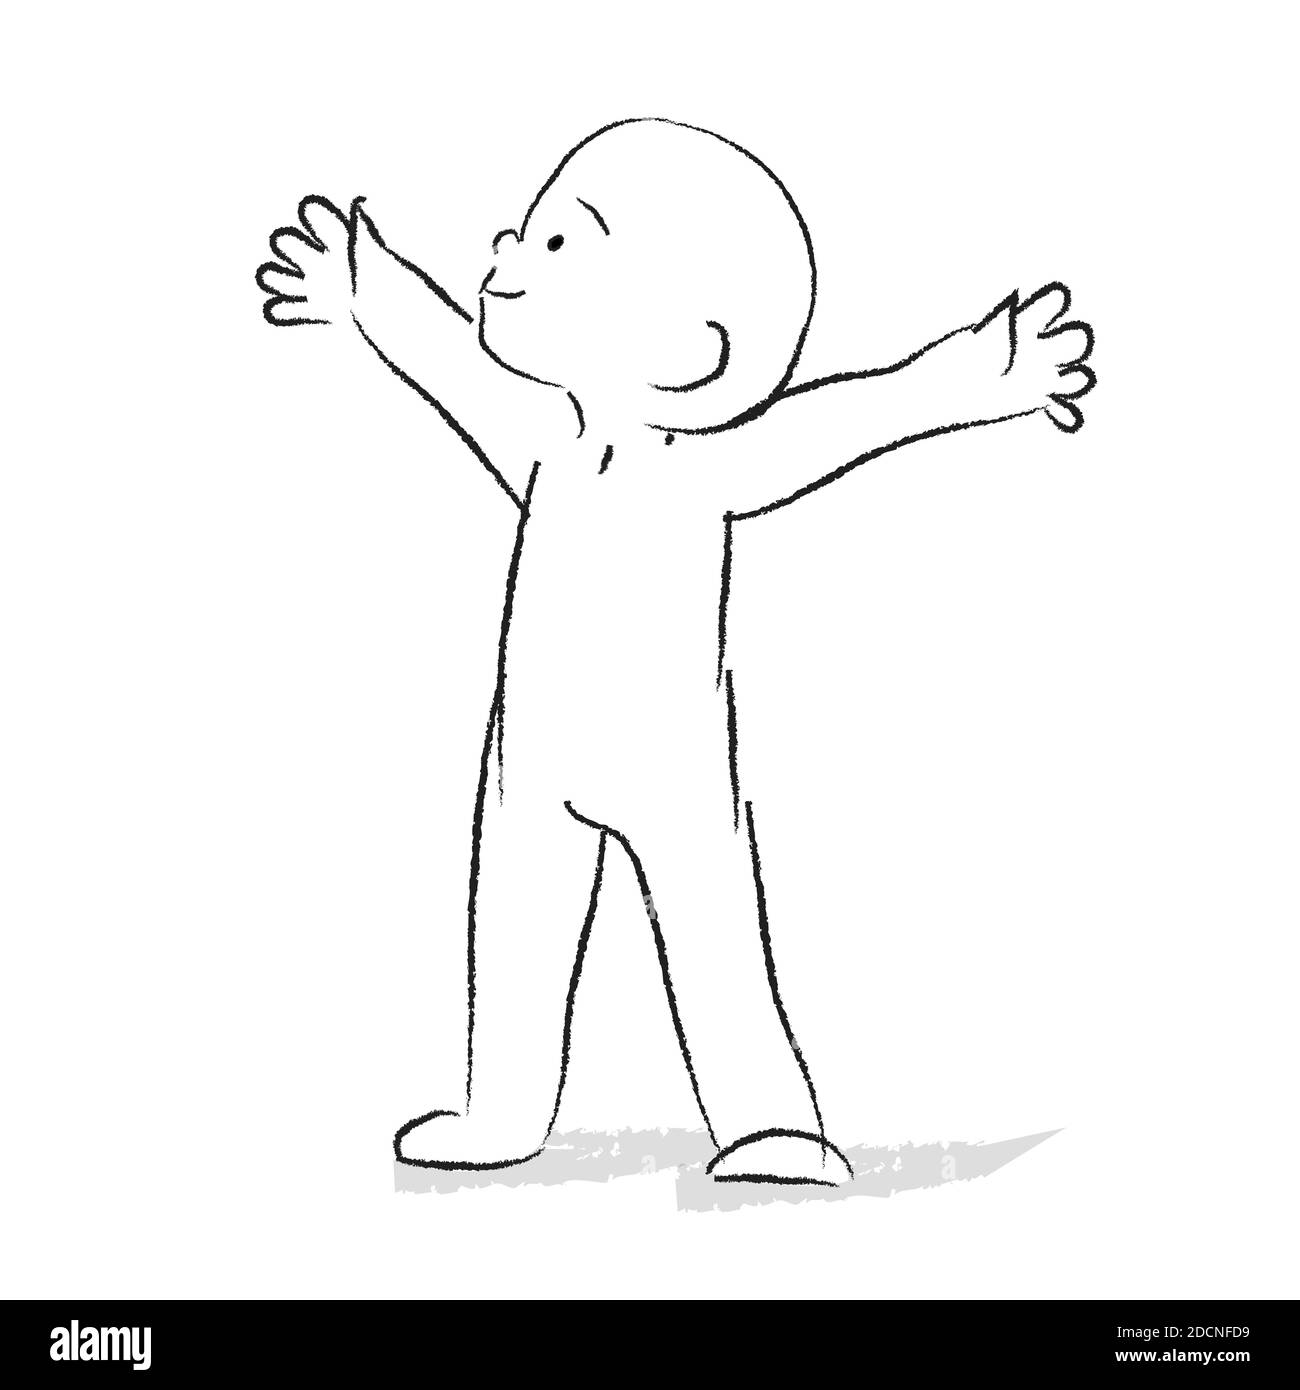 Fröhliches, lachendes Kind warf seine Hände auf. Glücklicher Junge. Niedliche Chib Cartoon Illustration. Doodle-Stil. Emotionsdarstellung Stock Vektor